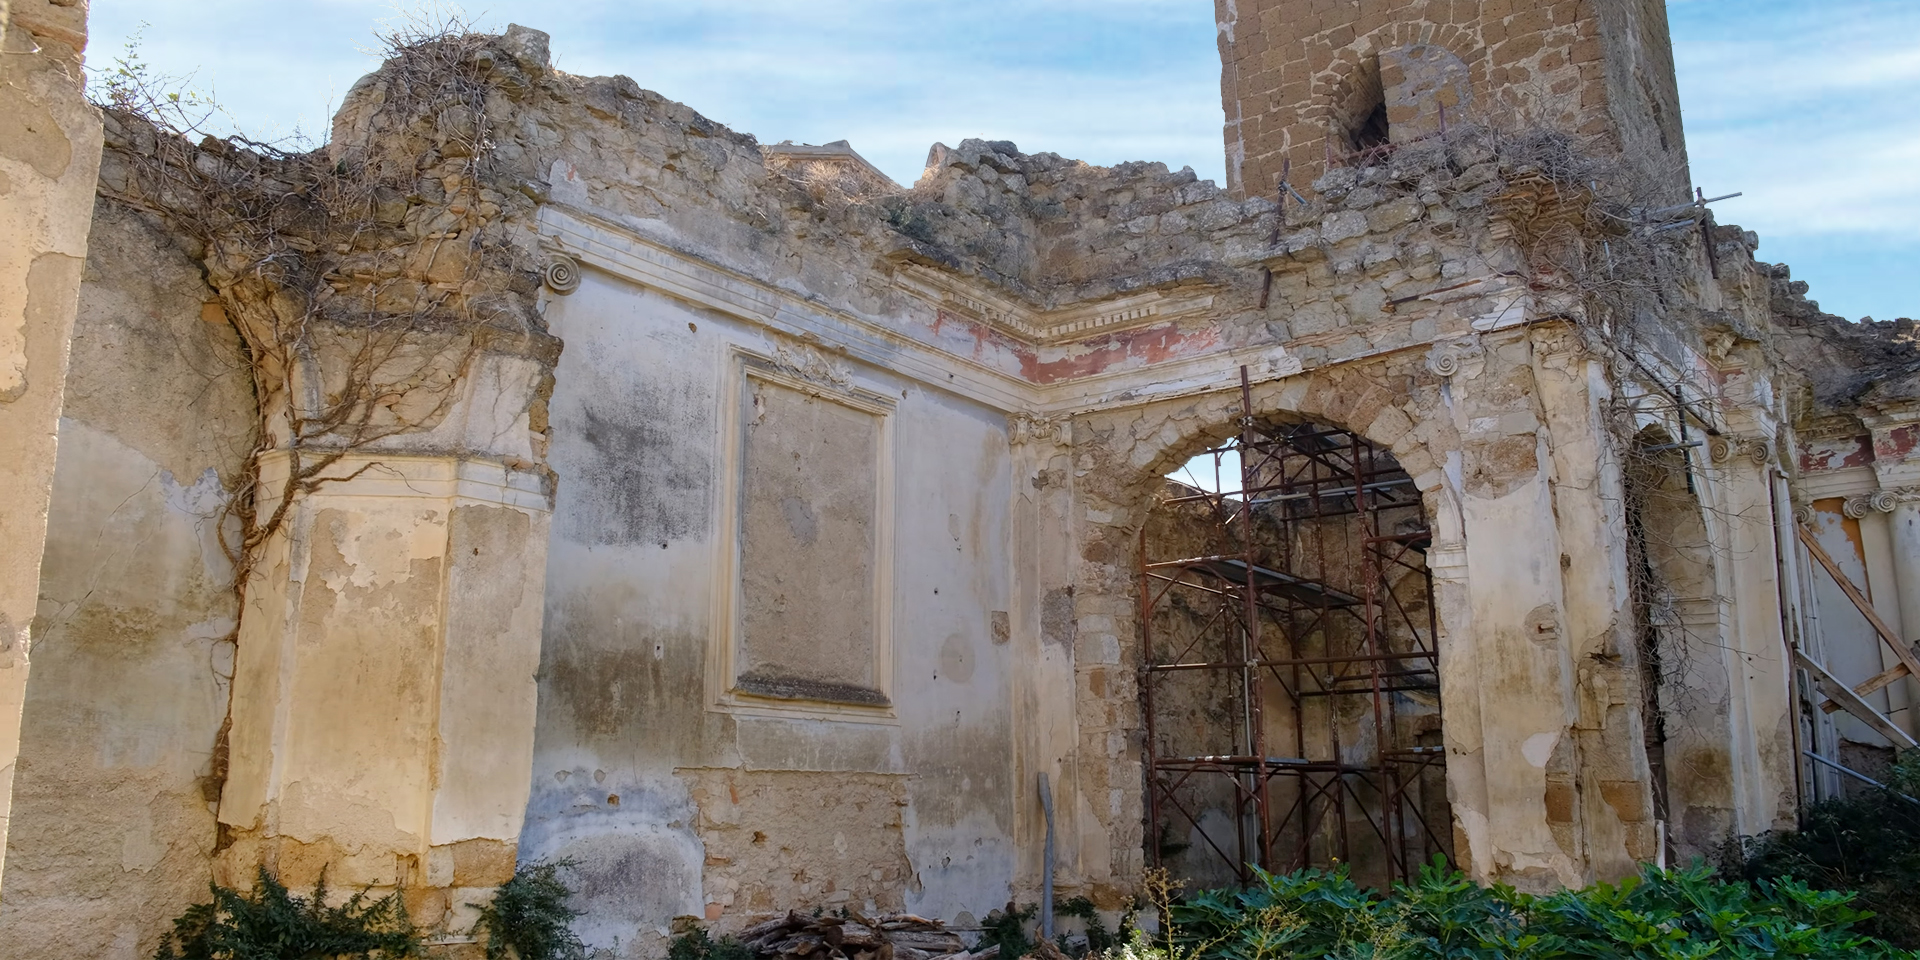 Celleno il borgo fantasma - Ex chiesa di San Donato